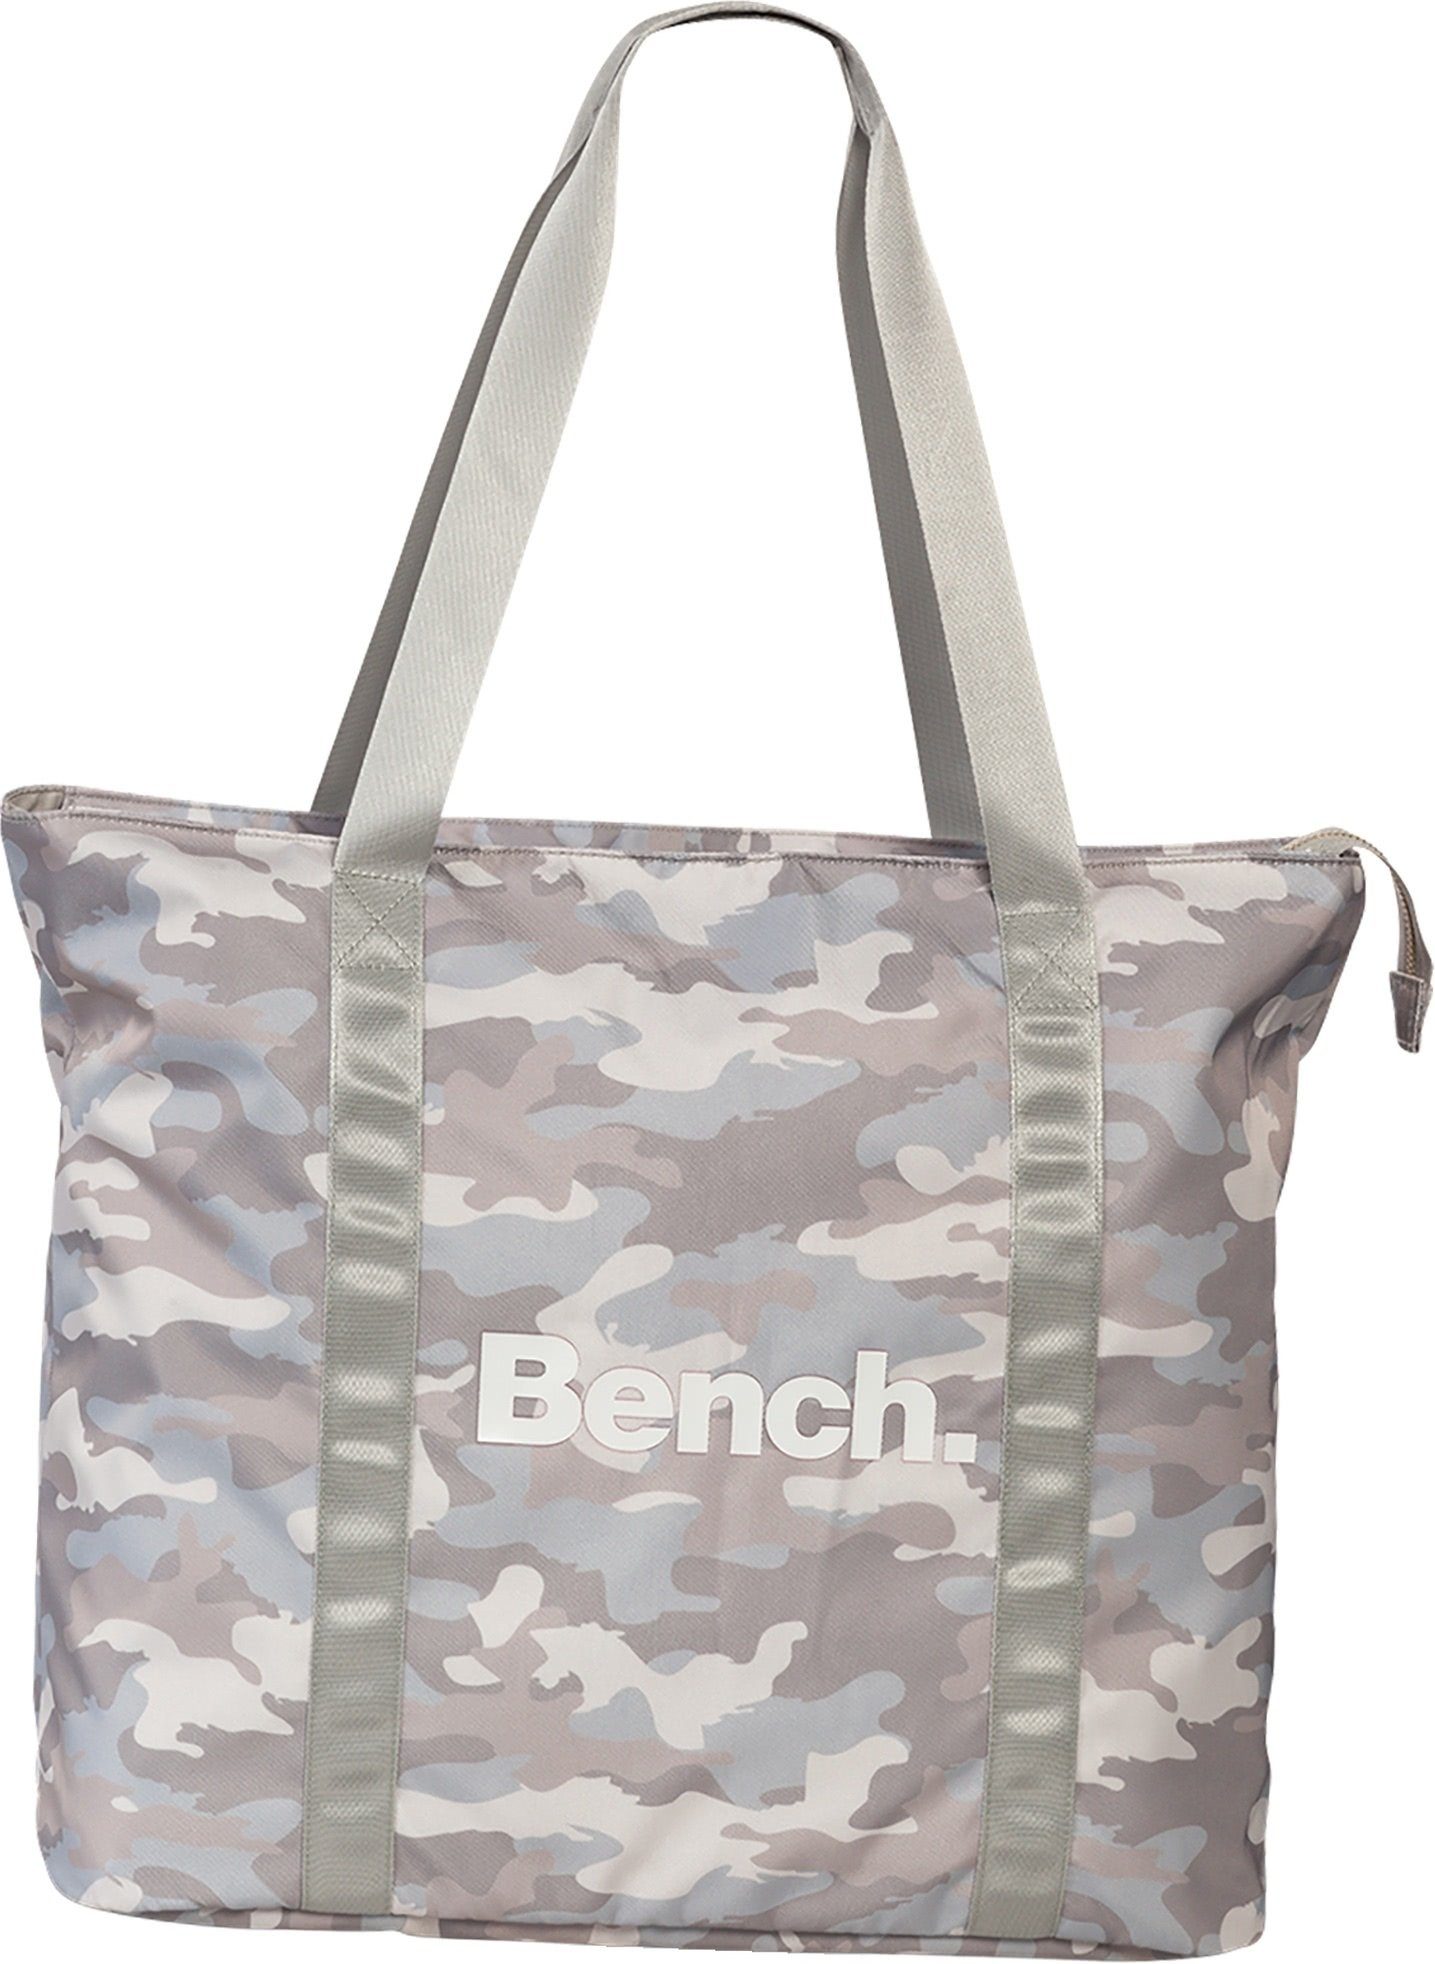 Bench. Schultertasche Bench sportliche Shopper Bag (Schultertasche, Schultertasche), Damen, Jugend Tasche strapazierfähiges Textilnylon hellgrau, weiß